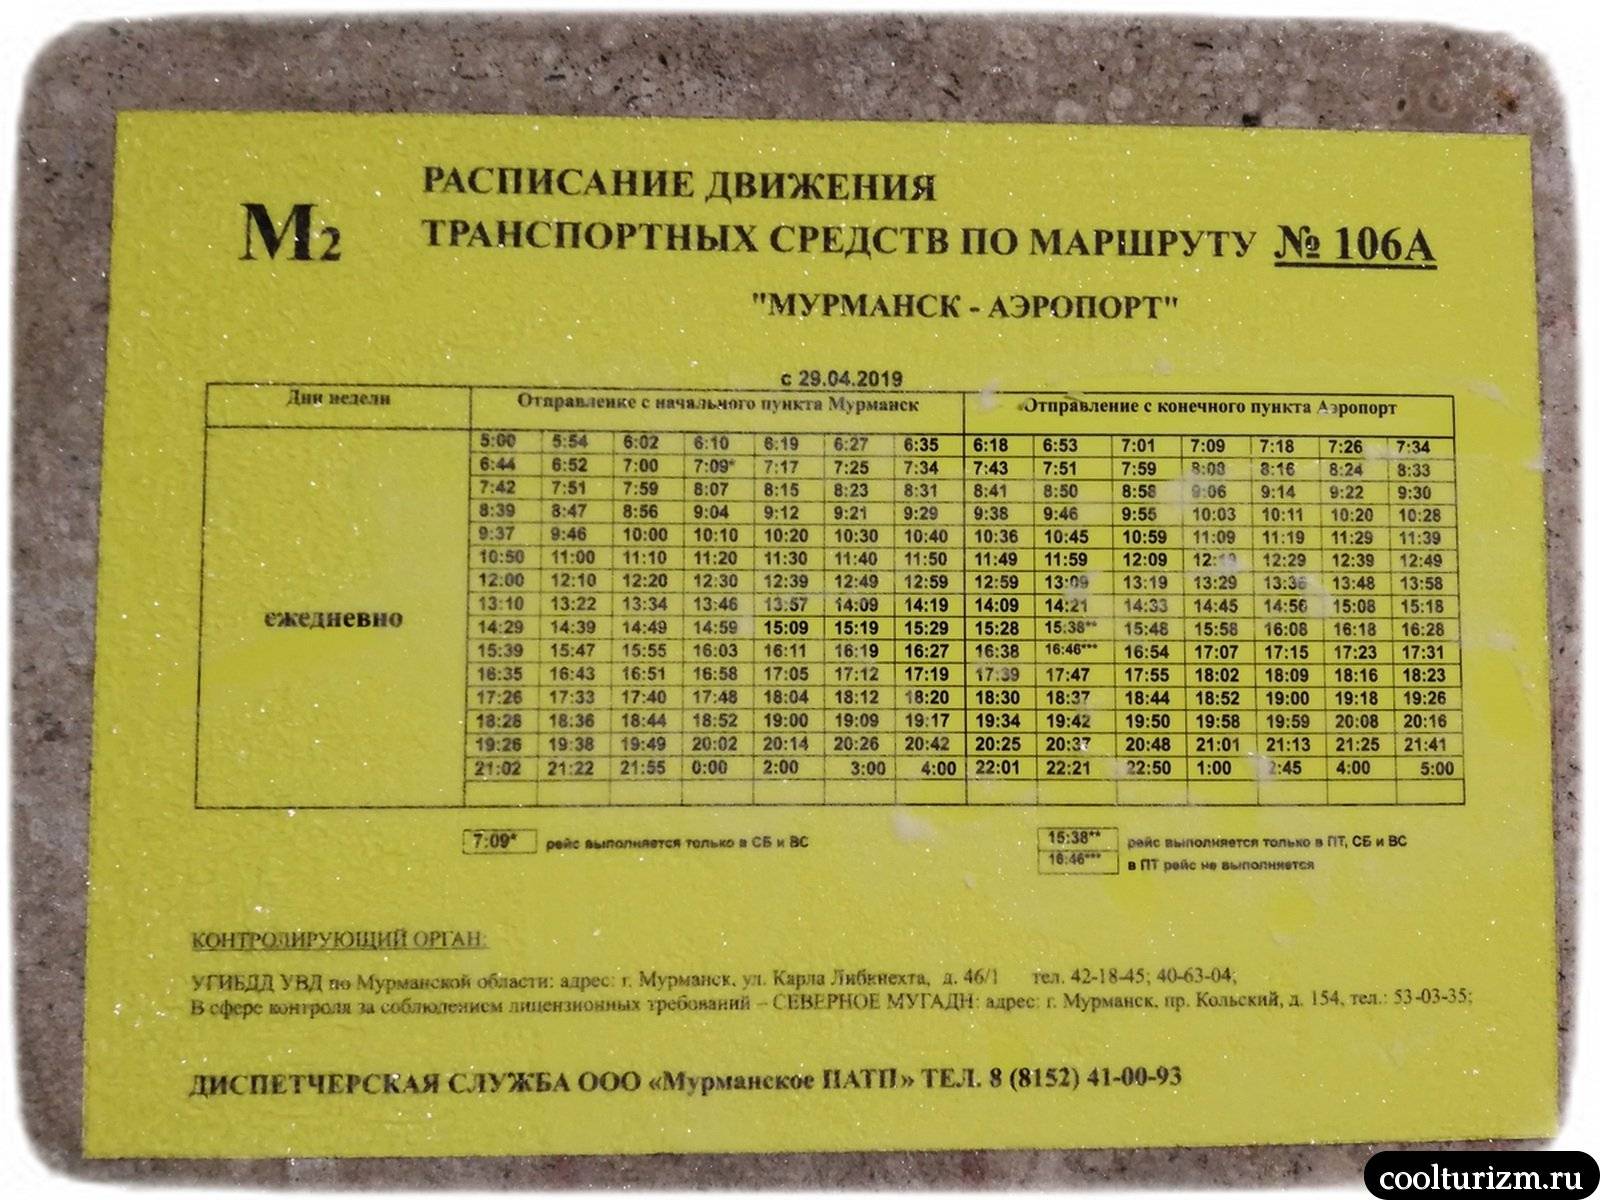 Аэропорт мурманск (mmk) - расписание рейсов, авиабилеты